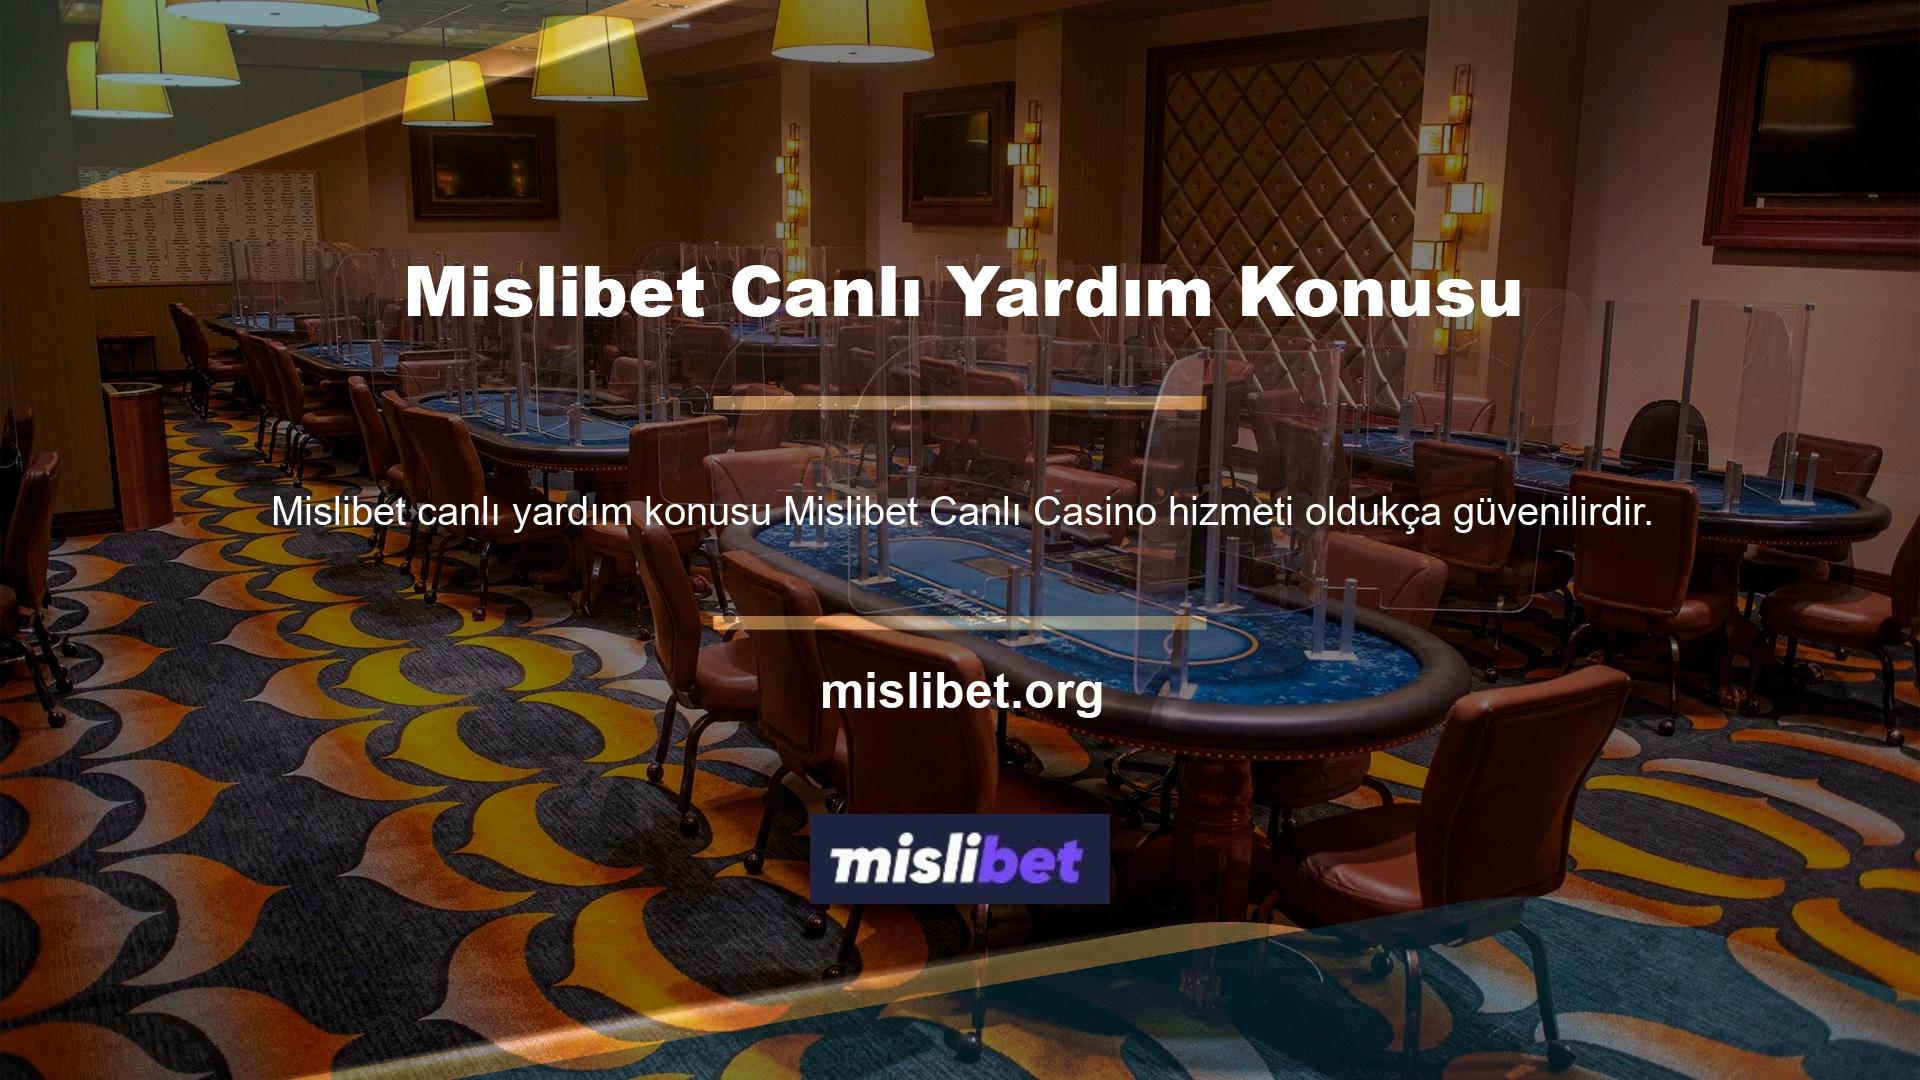 Mislibet Canlı Casino Canlı Yardım temasıyla tasarlanan bu mavi web siteleri oldukça popülerdir